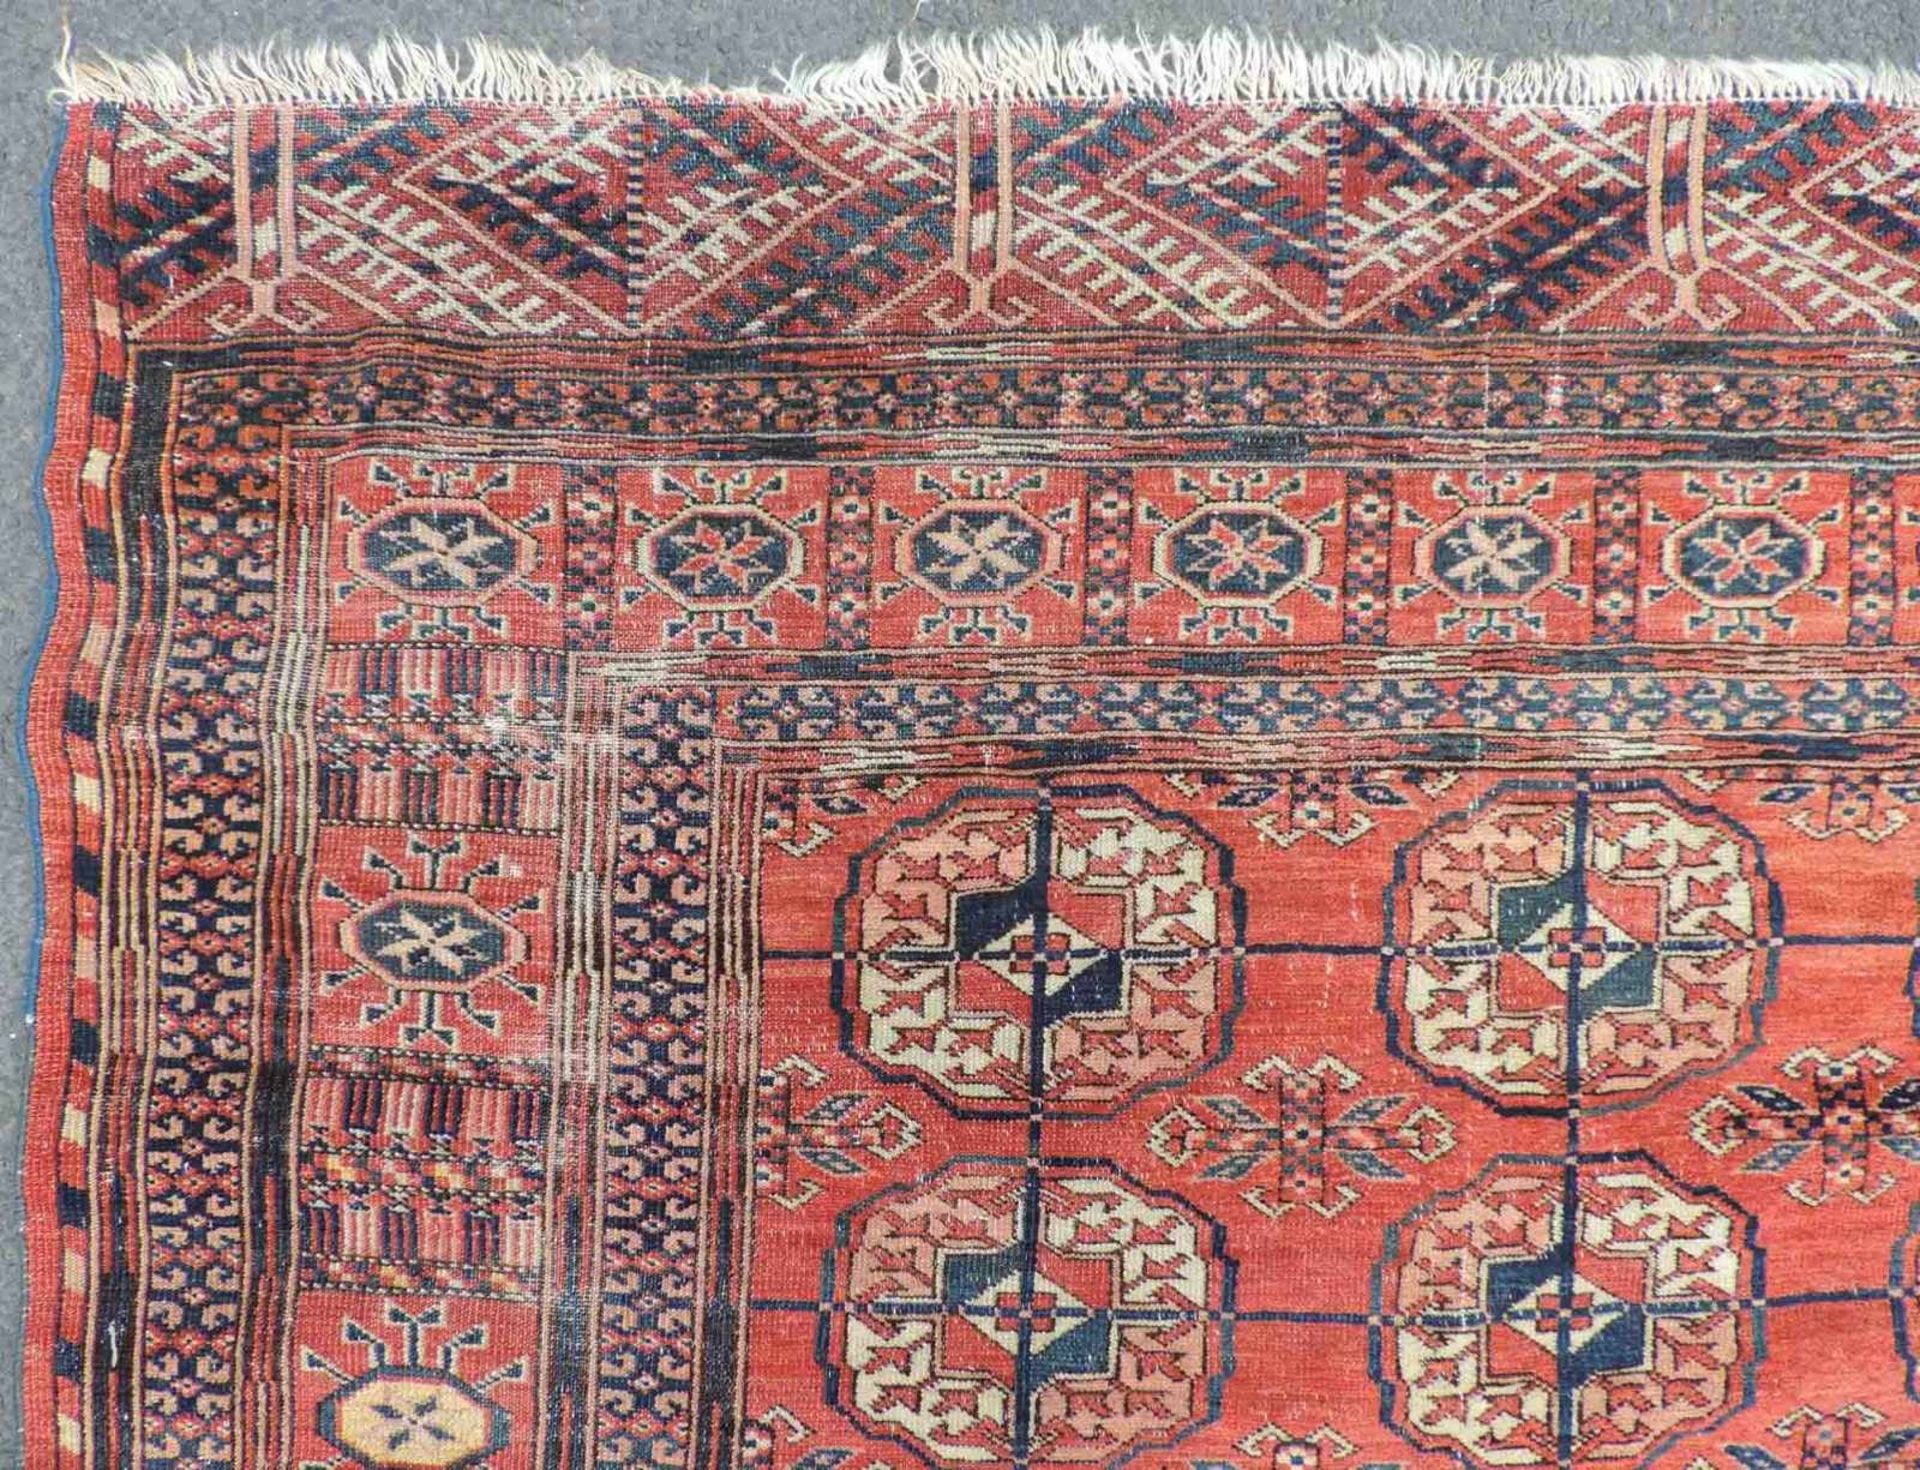 Tekke Stammesteppich. Turkmenistan, antik, um 1900. 173 cm x 130 cm. Handgeknüpft. Wolle auf - Bild 5 aus 10